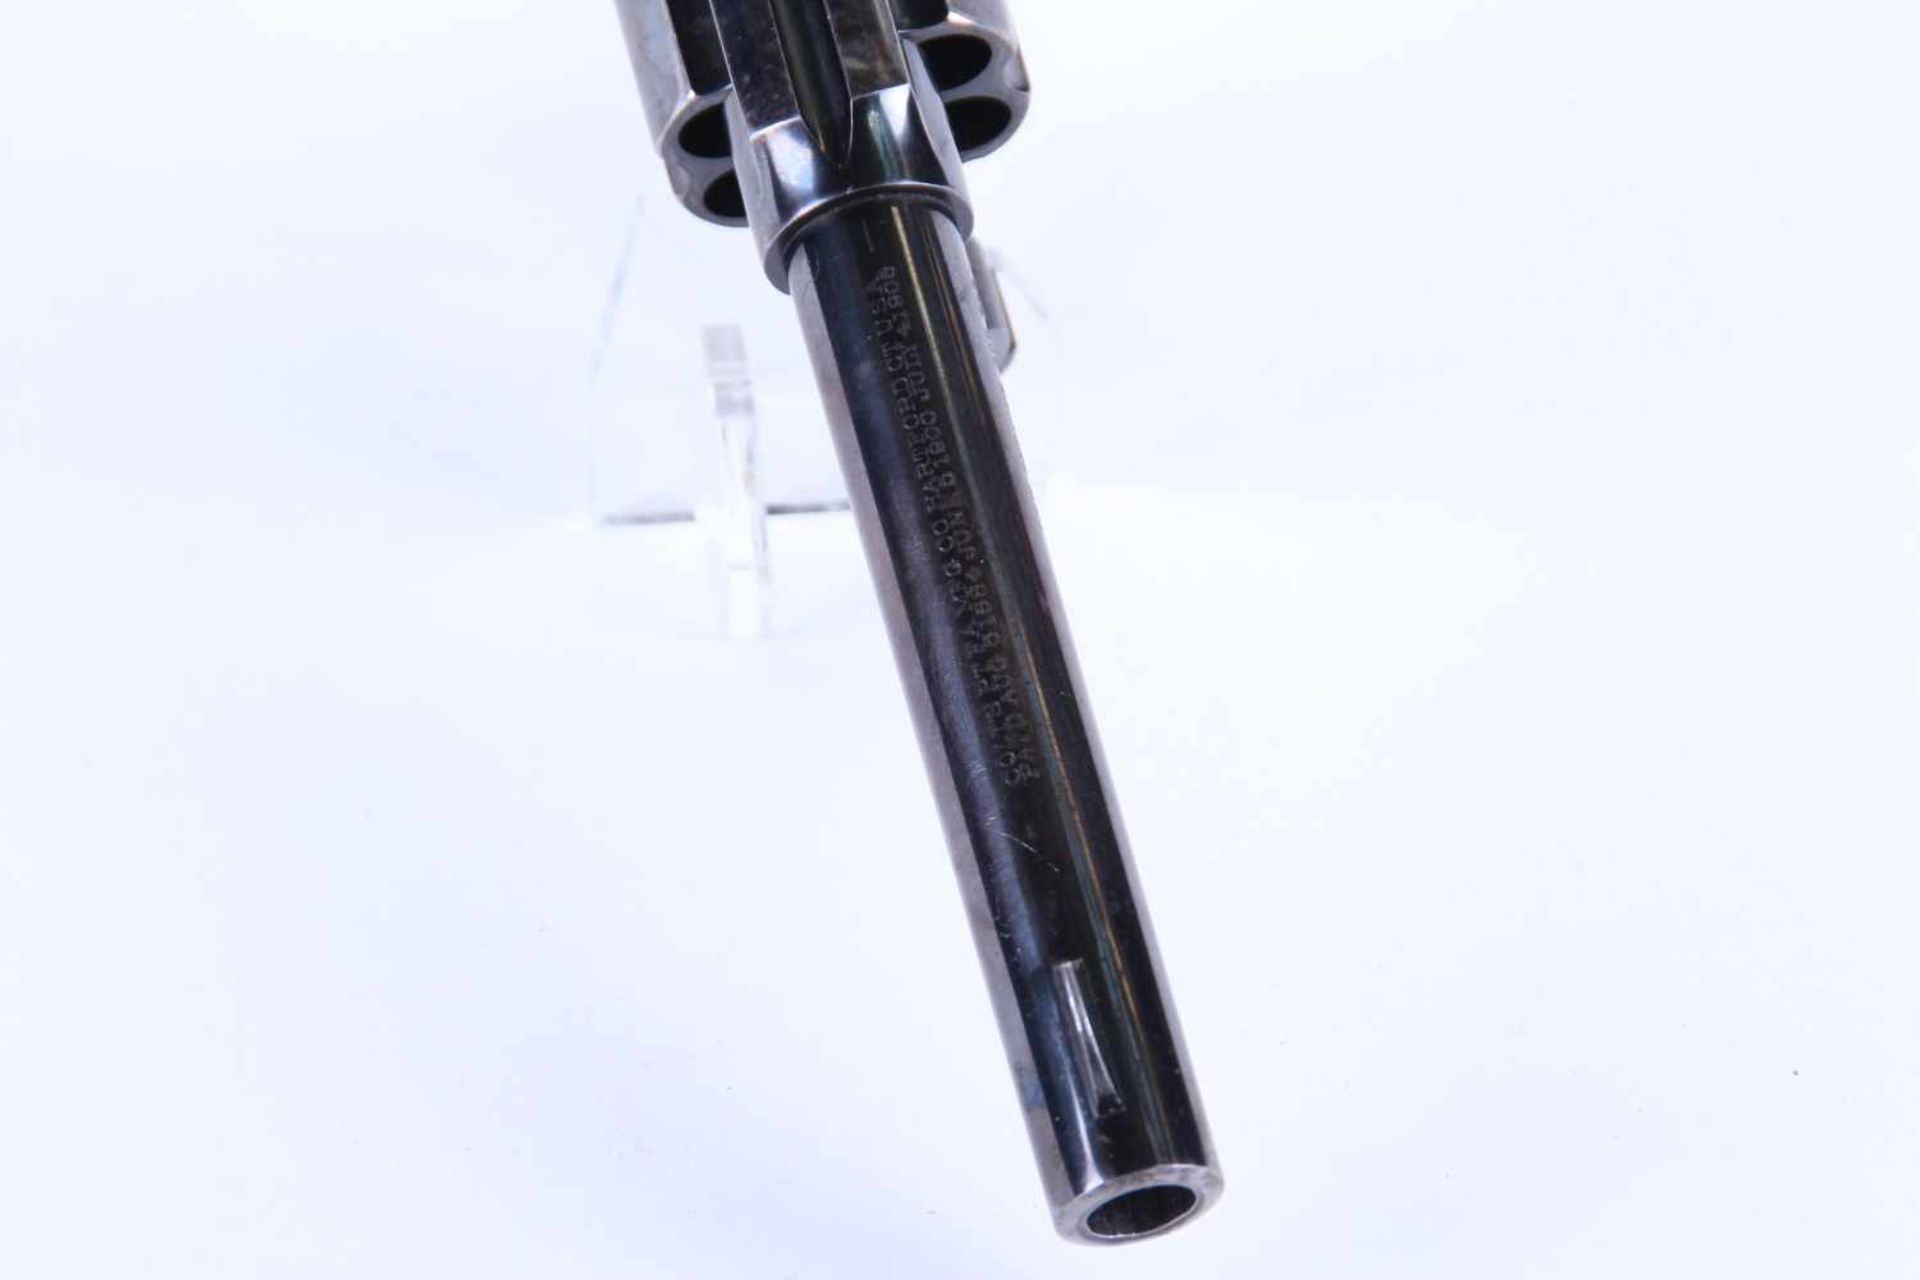 Revolver Colt New Service 1915 Catégorie B Calibre 455 eley. Plaquette en bakélite noire marquées - Bild 4 aus 4